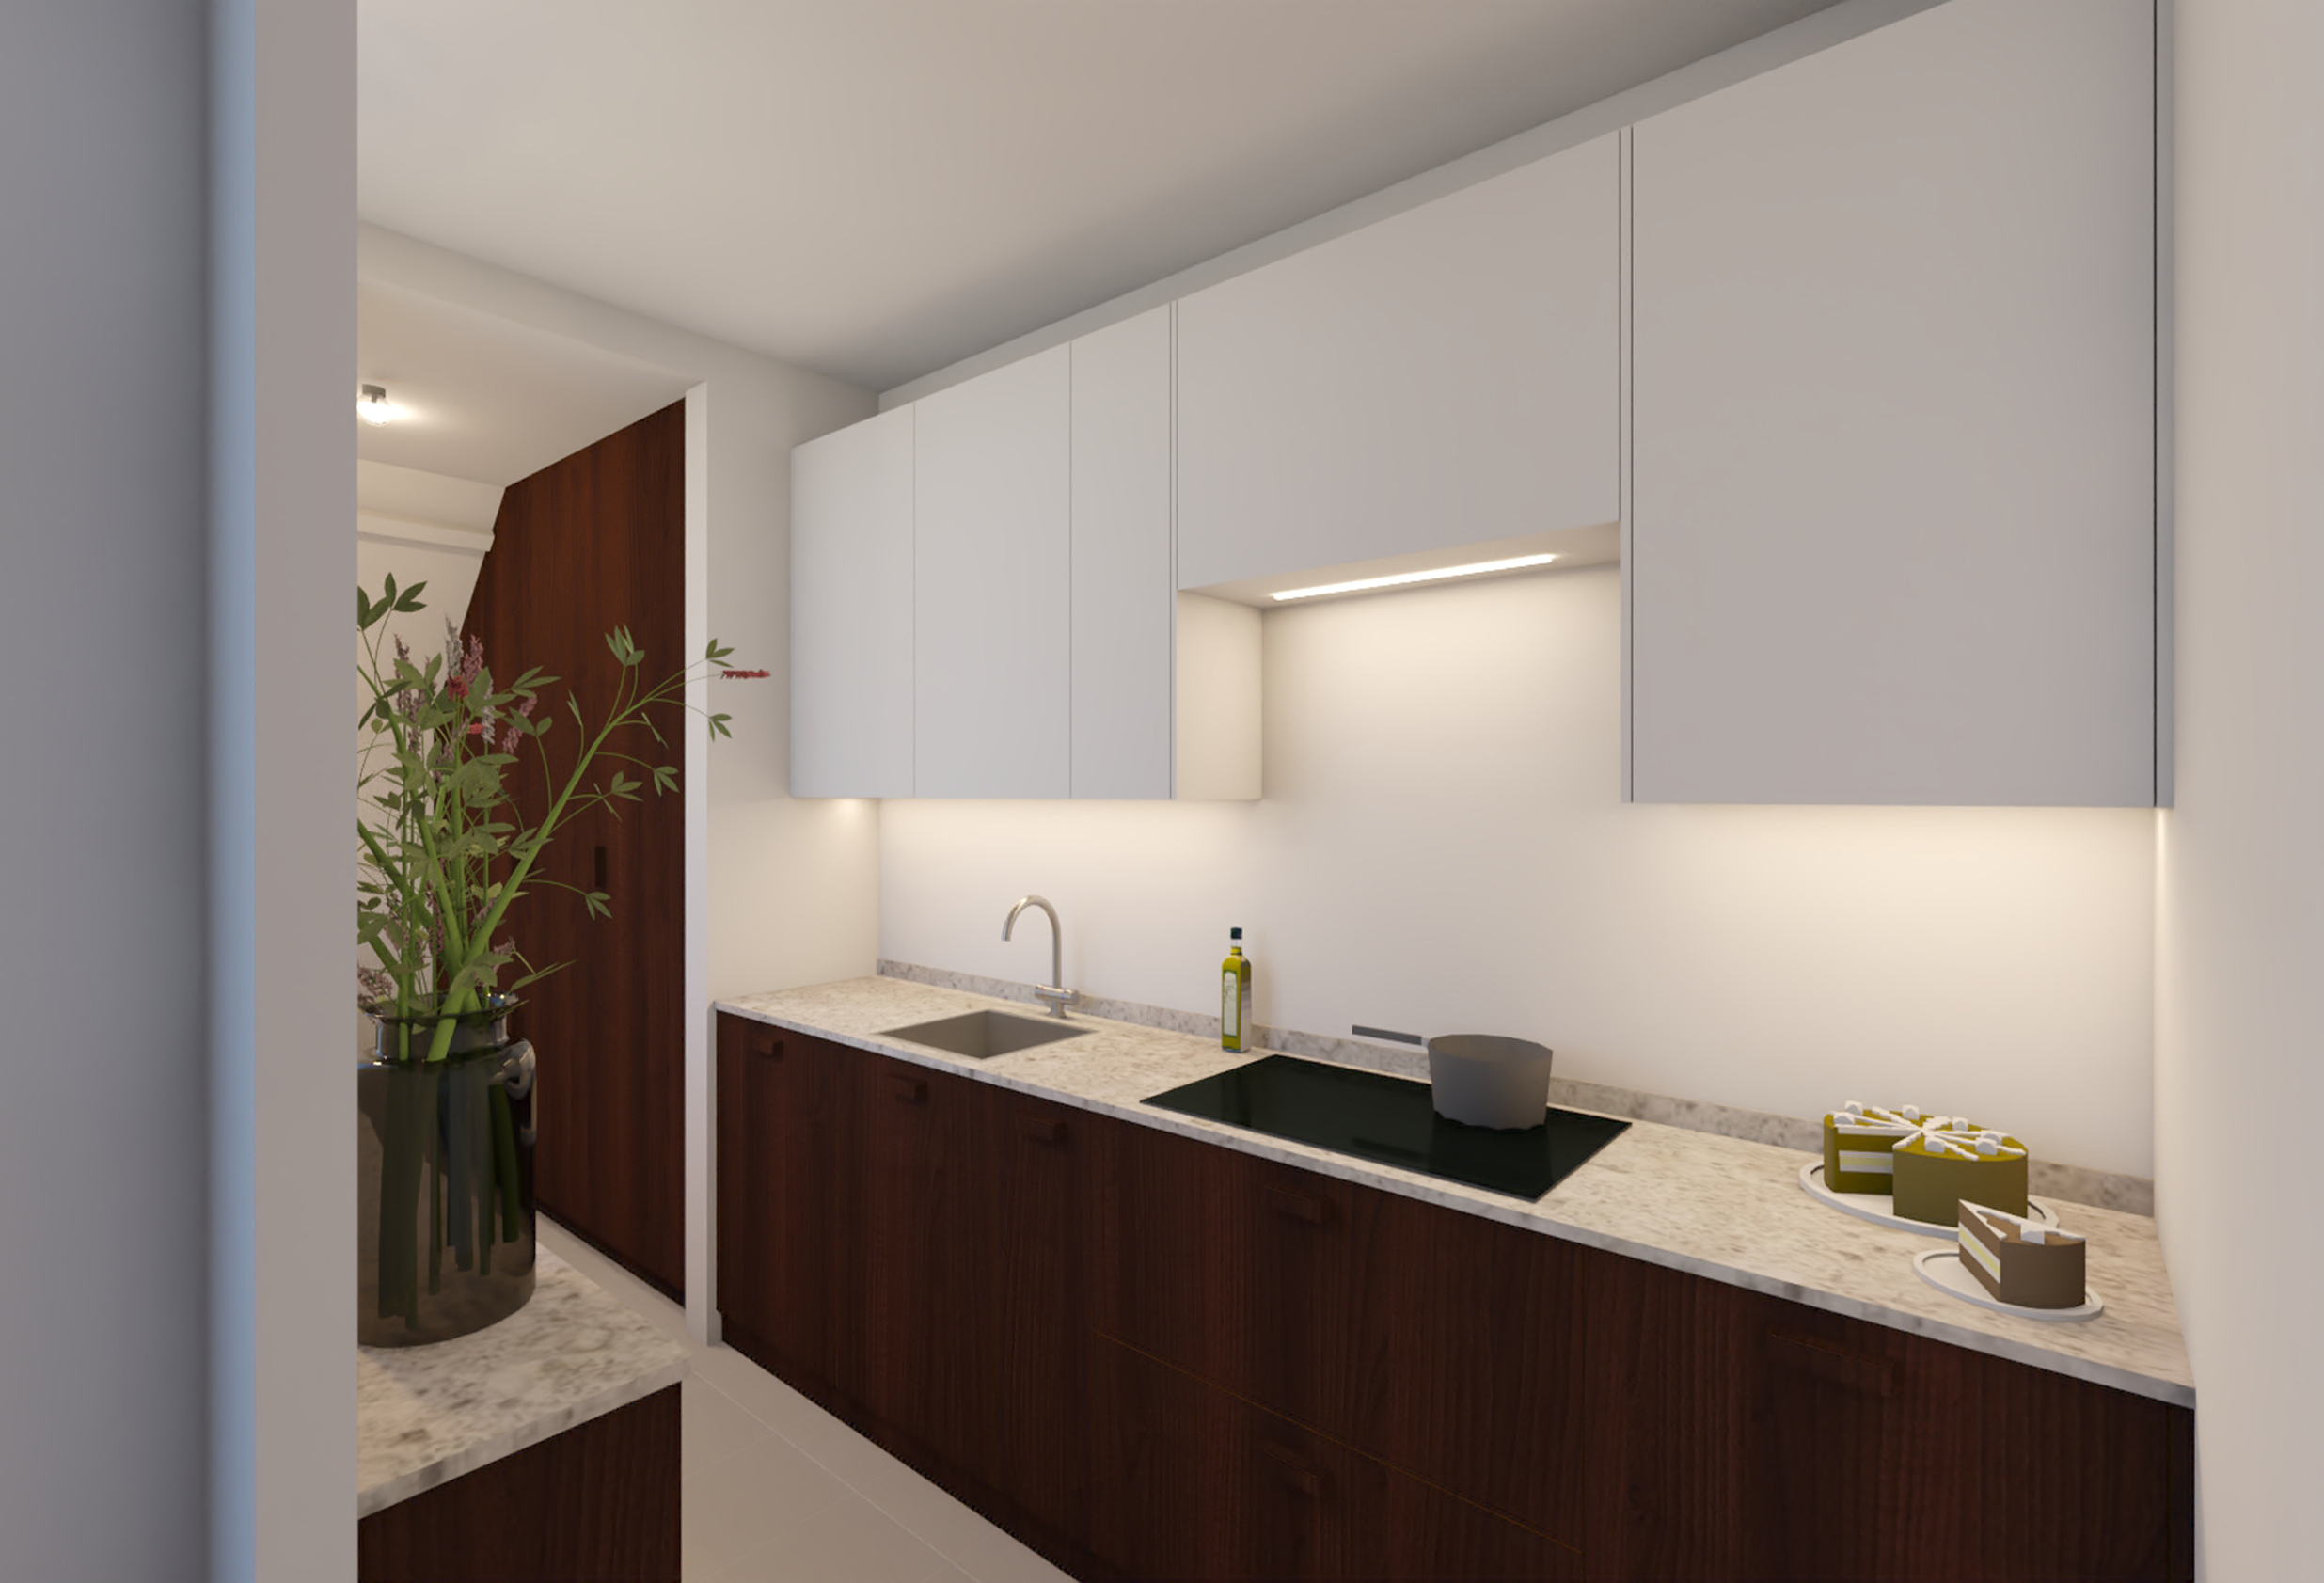 Moderne keuken, warm hout en koel wit voor ruimtelijk effect. Op maat gemaakt door interieurbouwer. Rosmalen